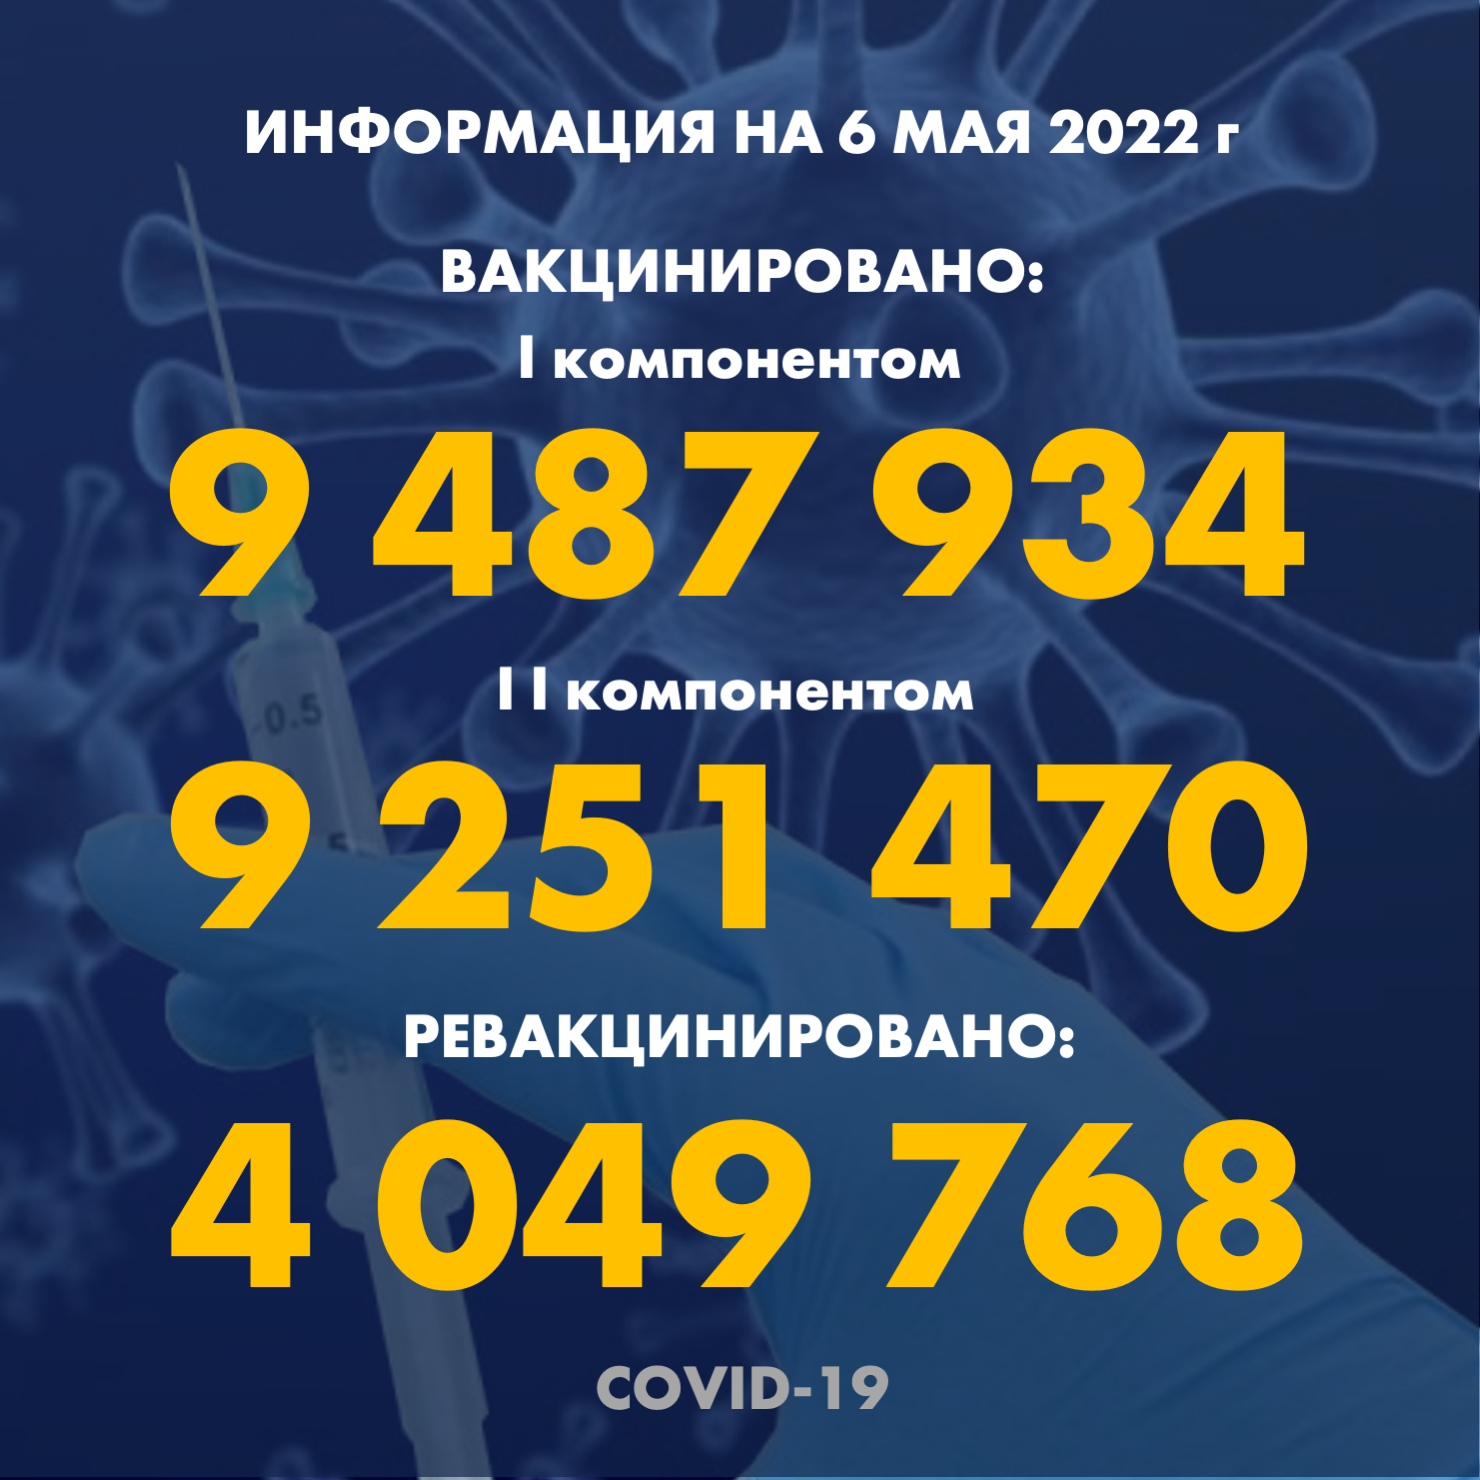 Количество людей, получивших вакцину PFIZER в Казахстане по состоянию на 6 мая 2022 года